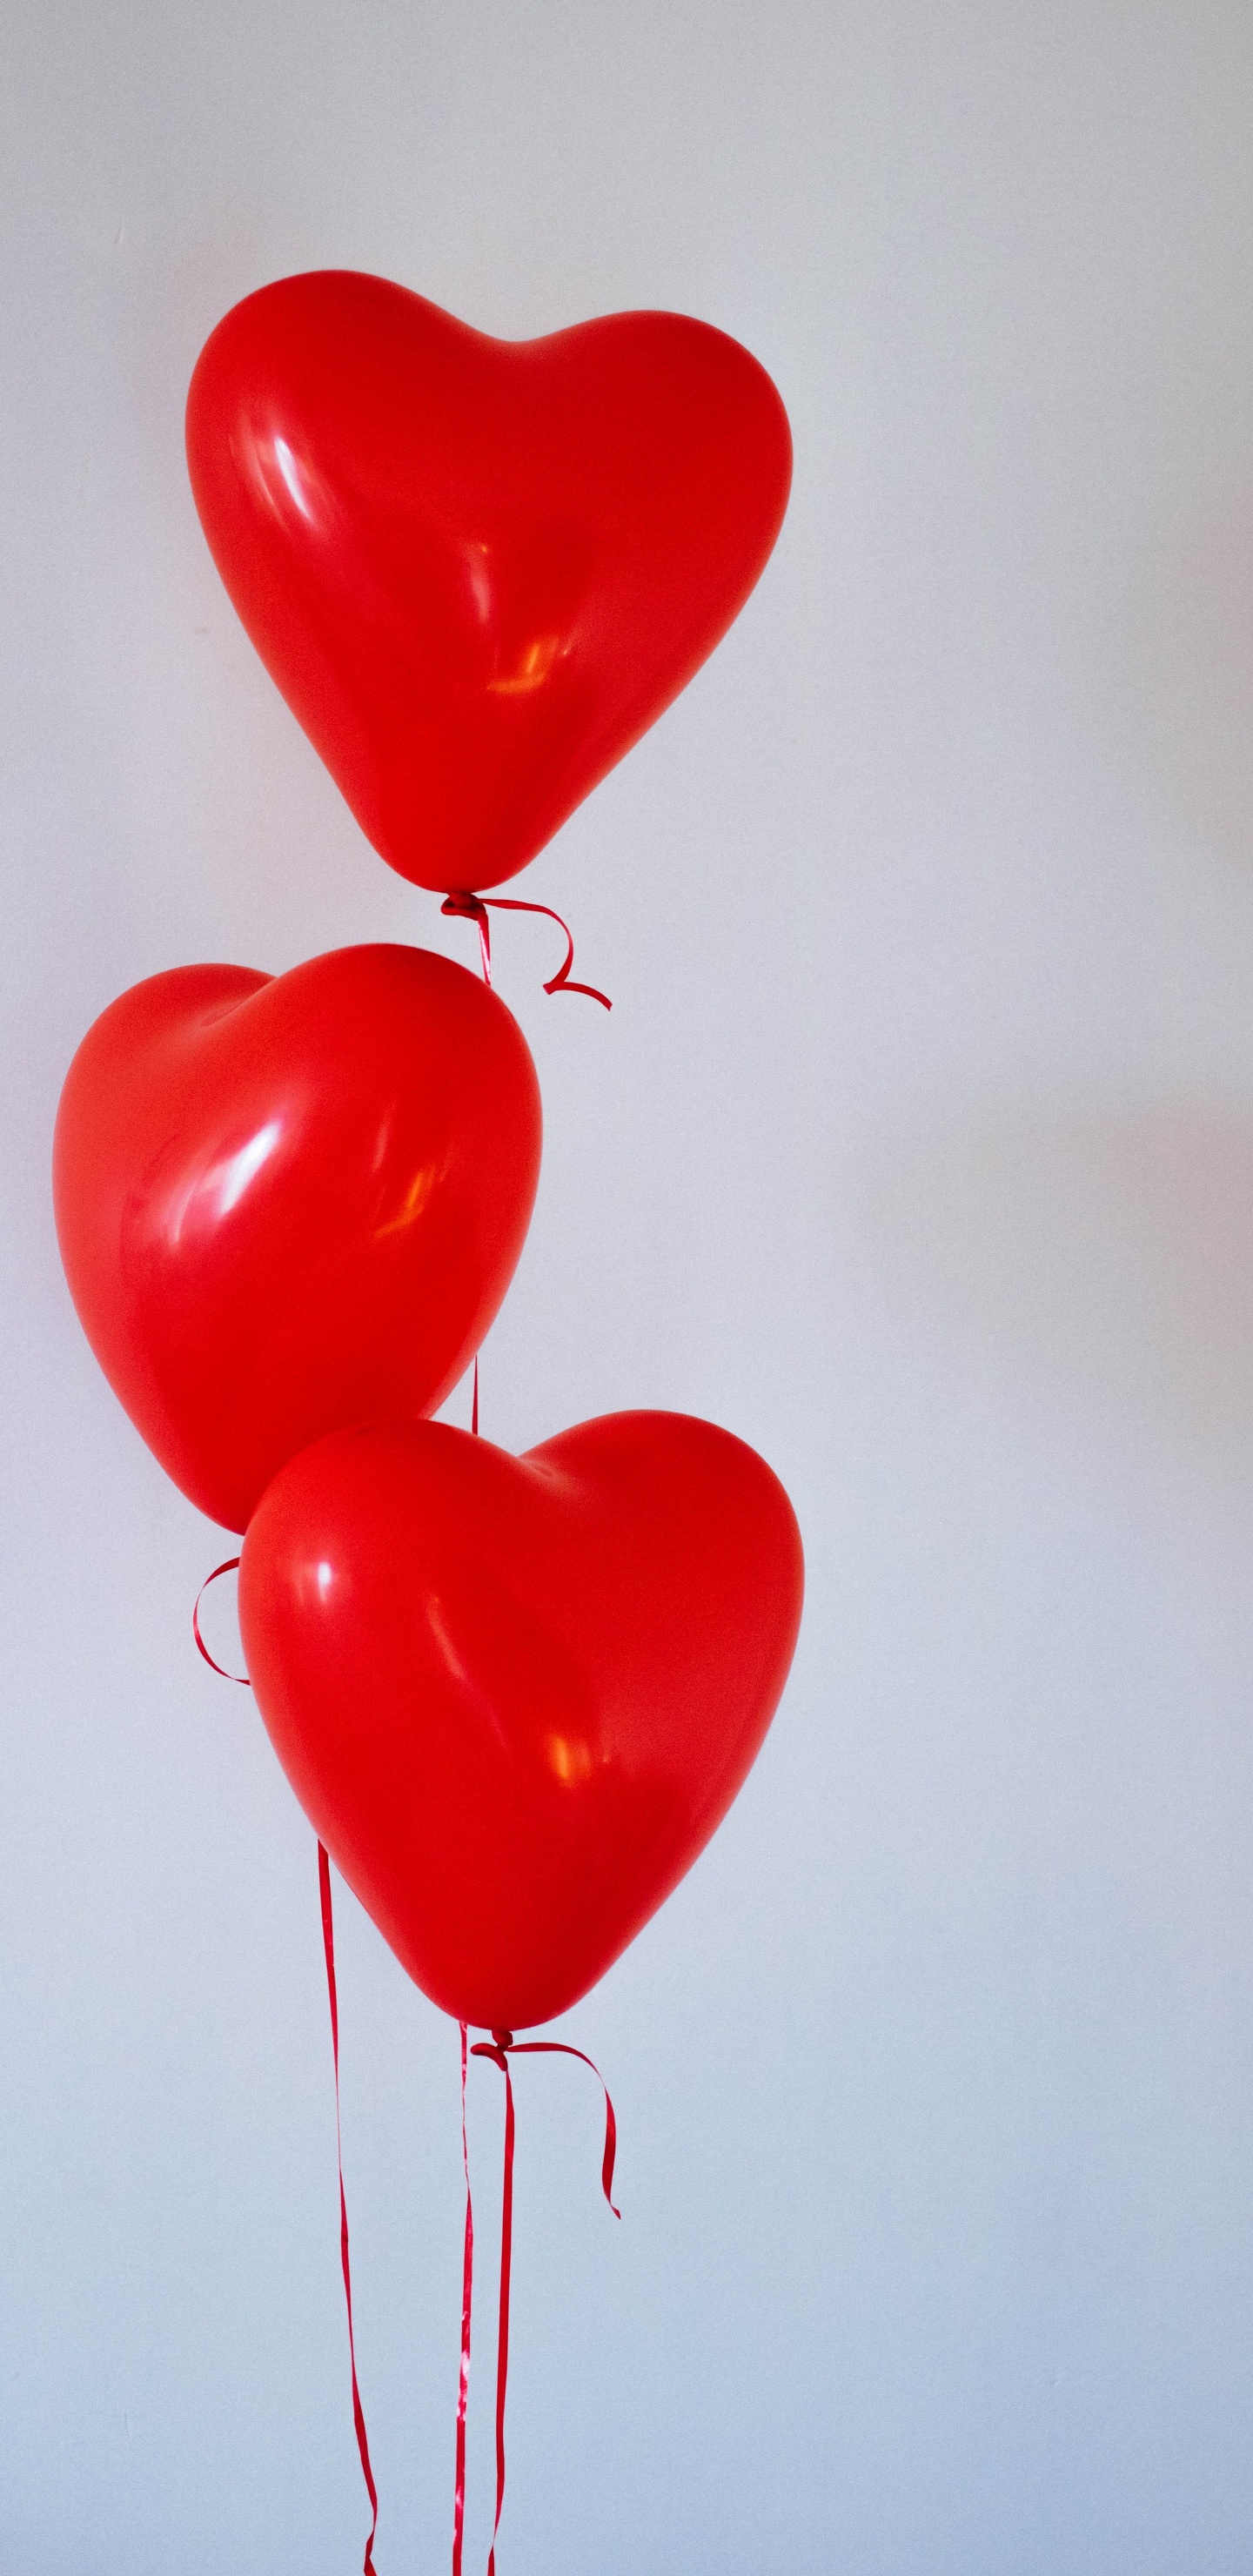 Ballon, Valentines Tag, Herzen, Organ, Liebe. Wallpaper in 1440x2960 Resolution